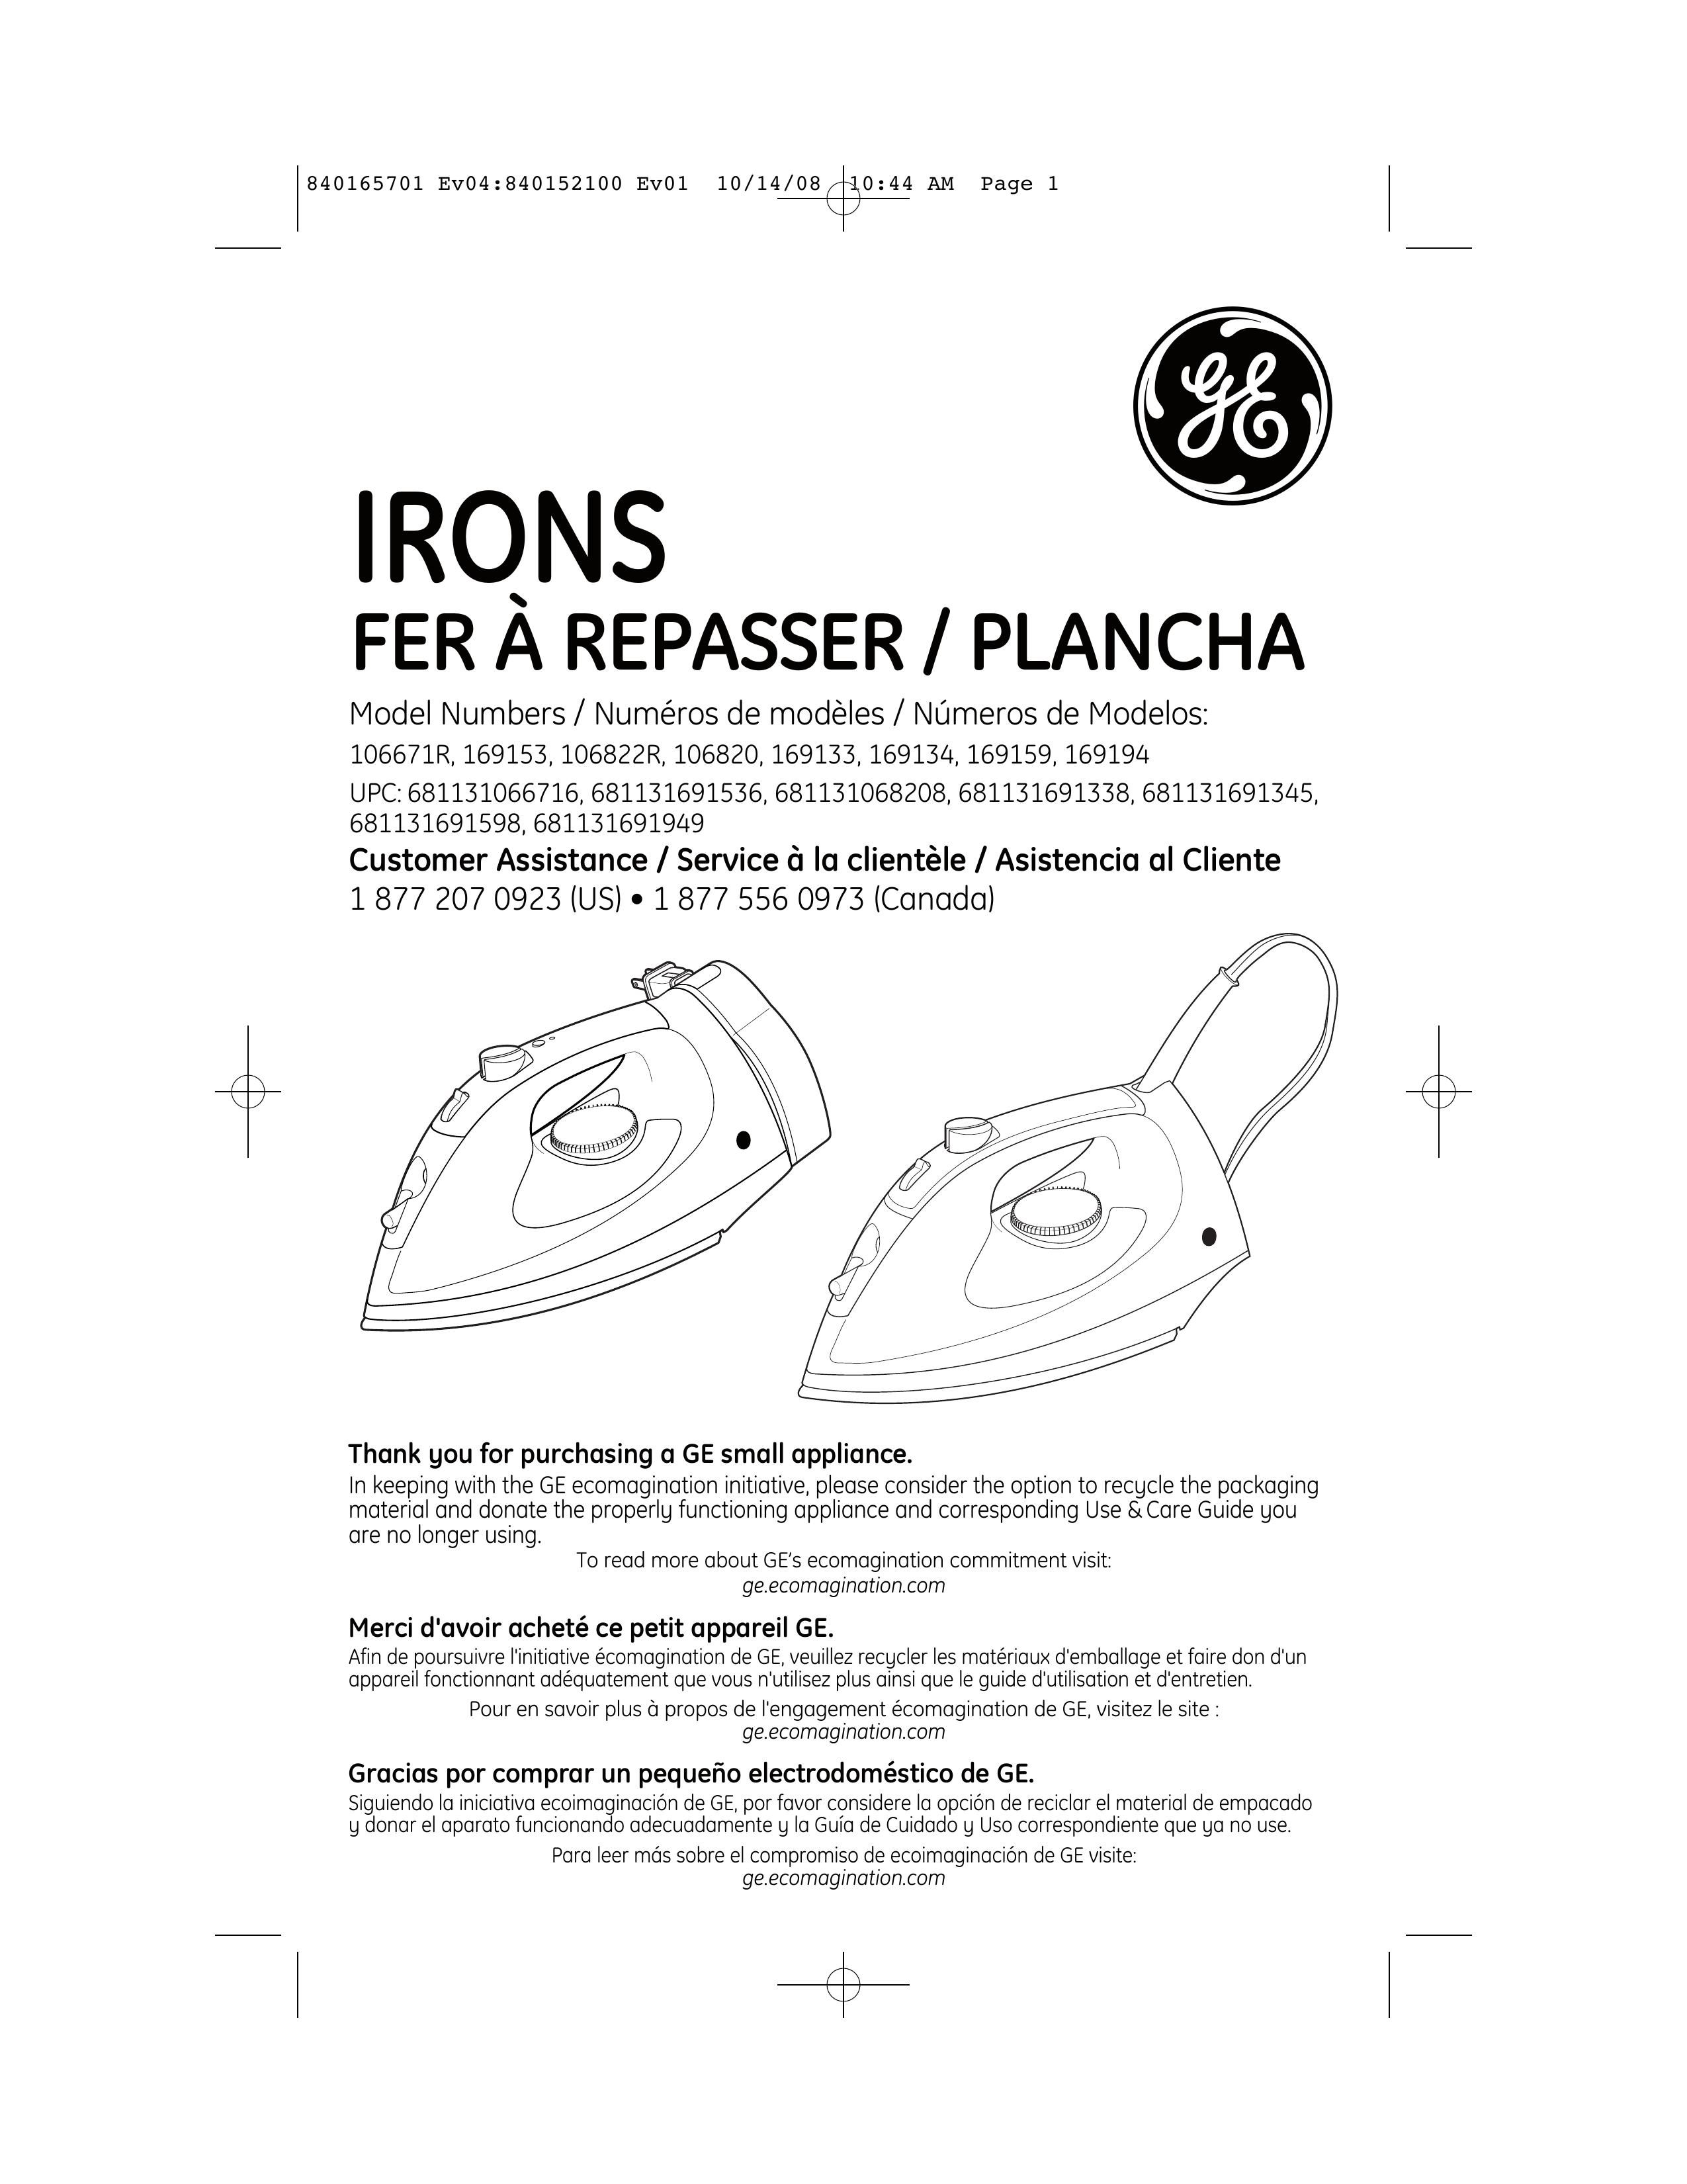 GE 681131068208 Iron User Manual